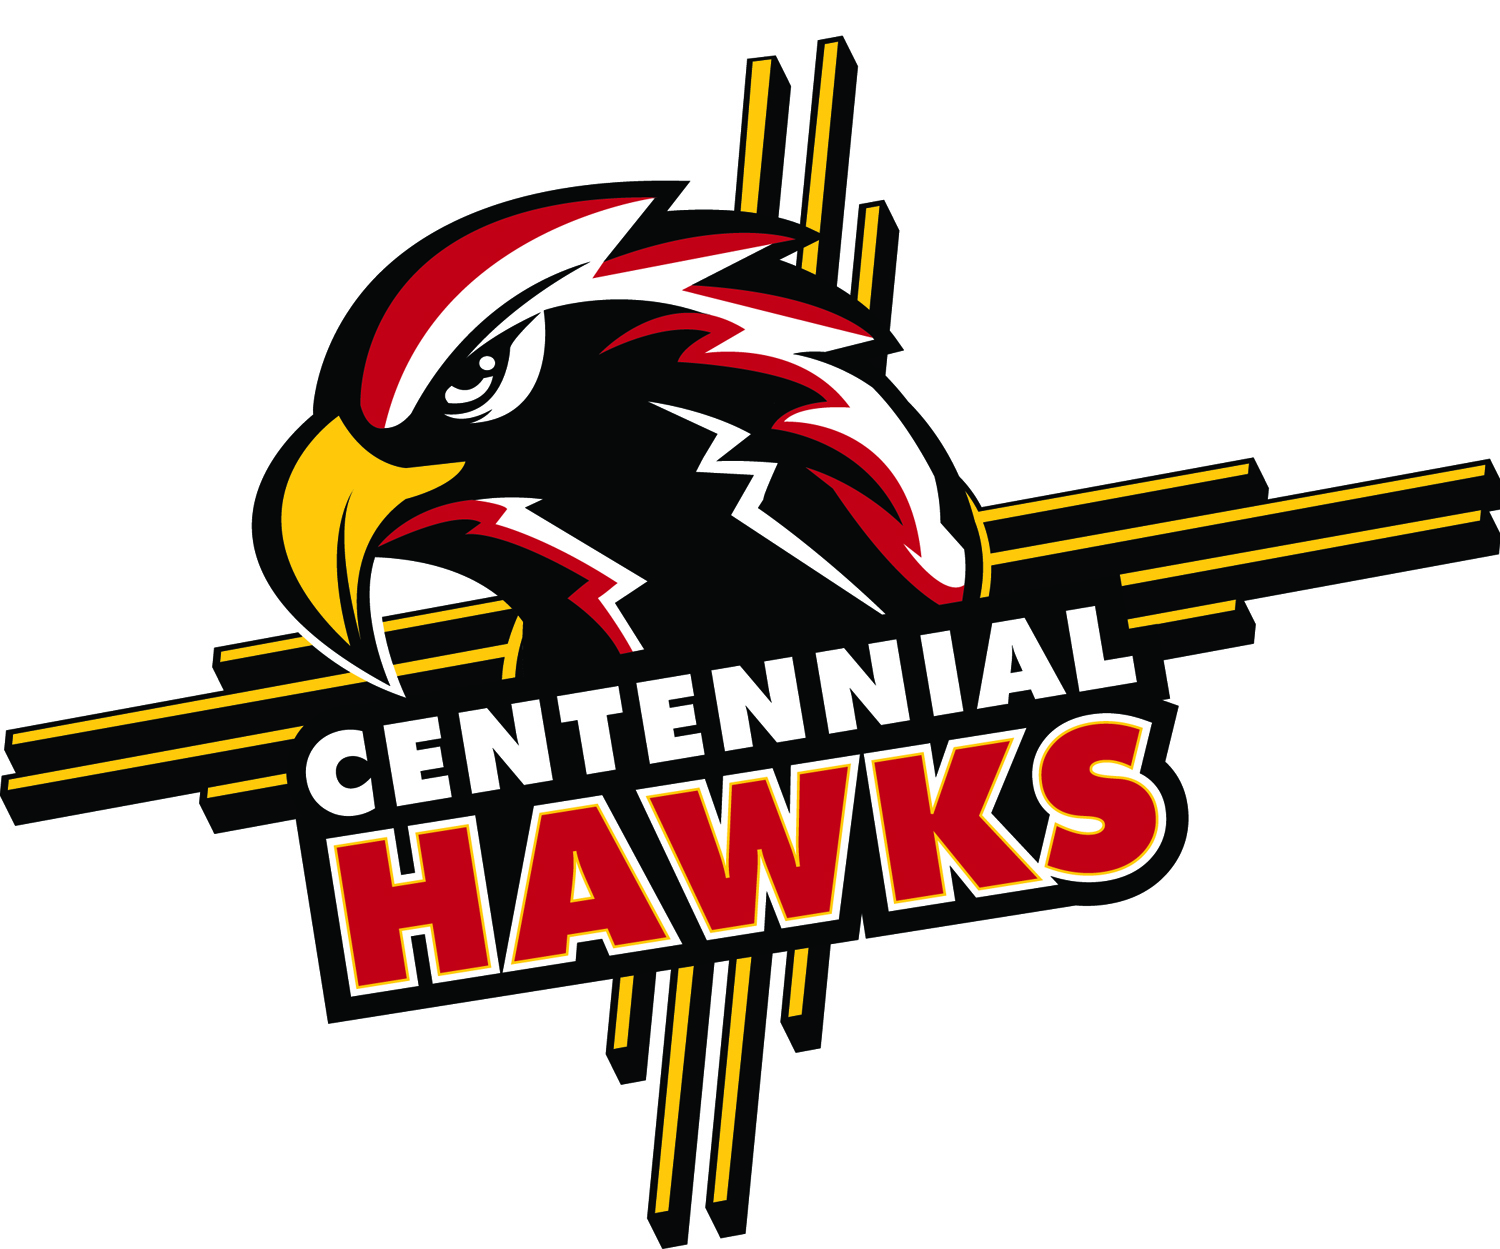 Centennial Hawks